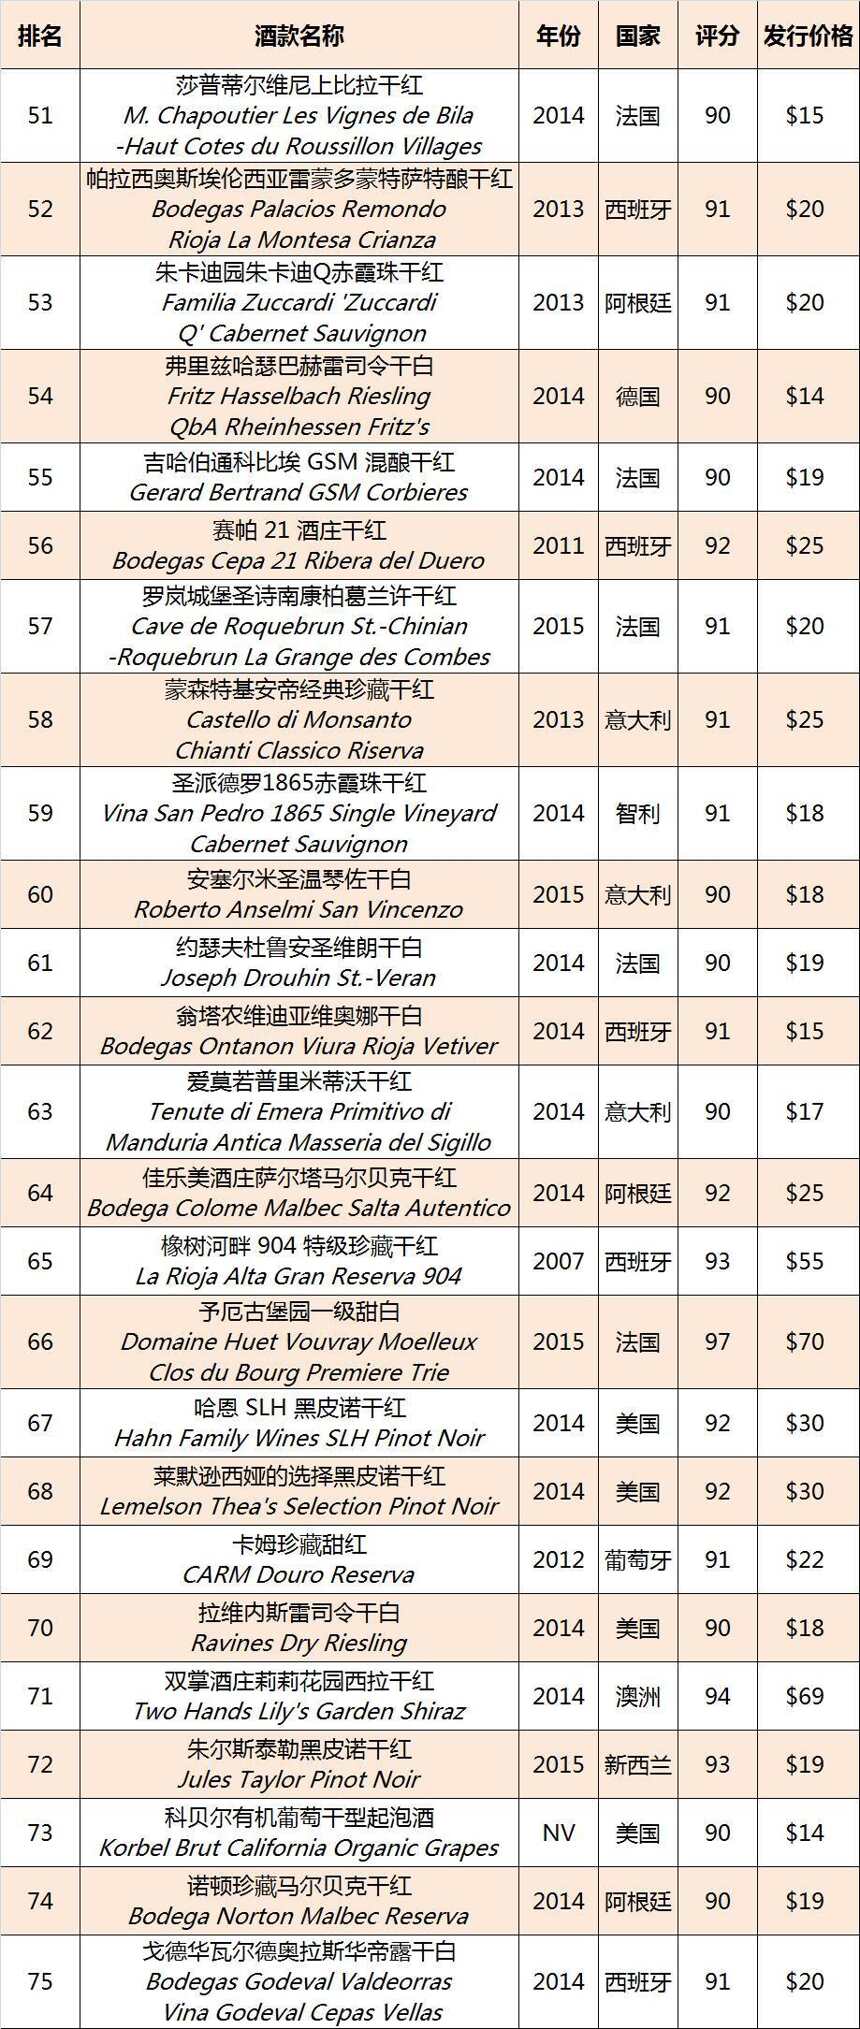 《葡萄酒观察家》2016 百大葡萄酒完整榜单新鲜出炉